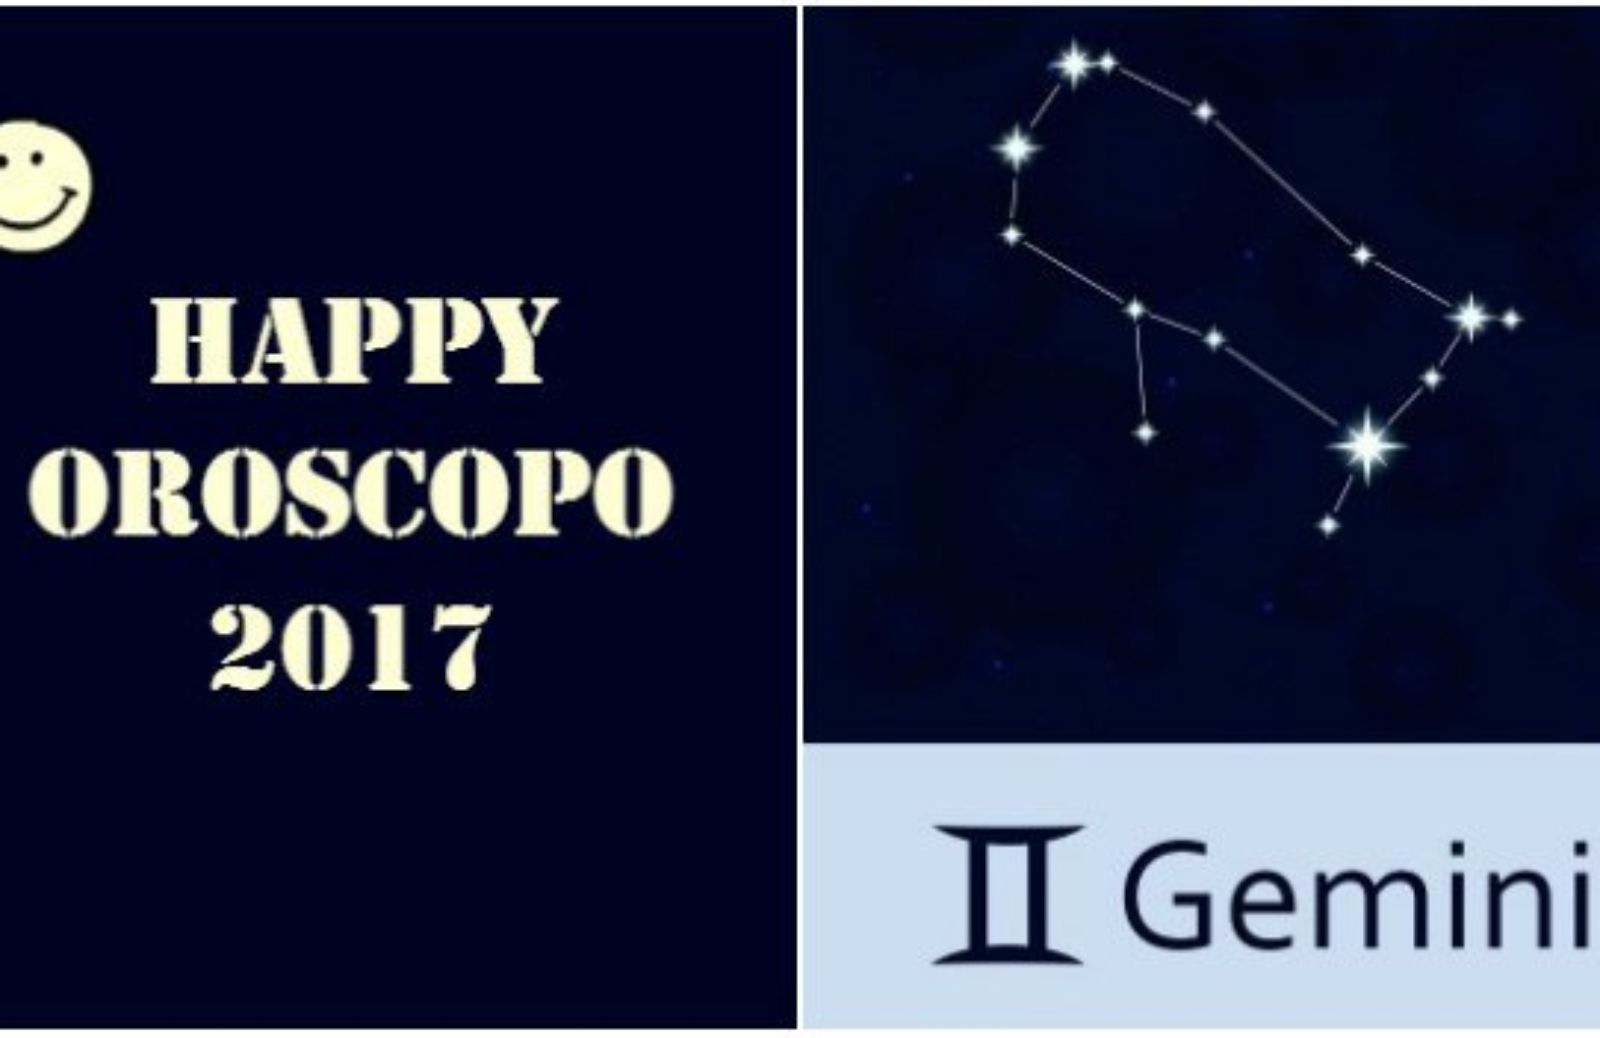 Happy Oroscopo 2017: il segno dei Gemelli